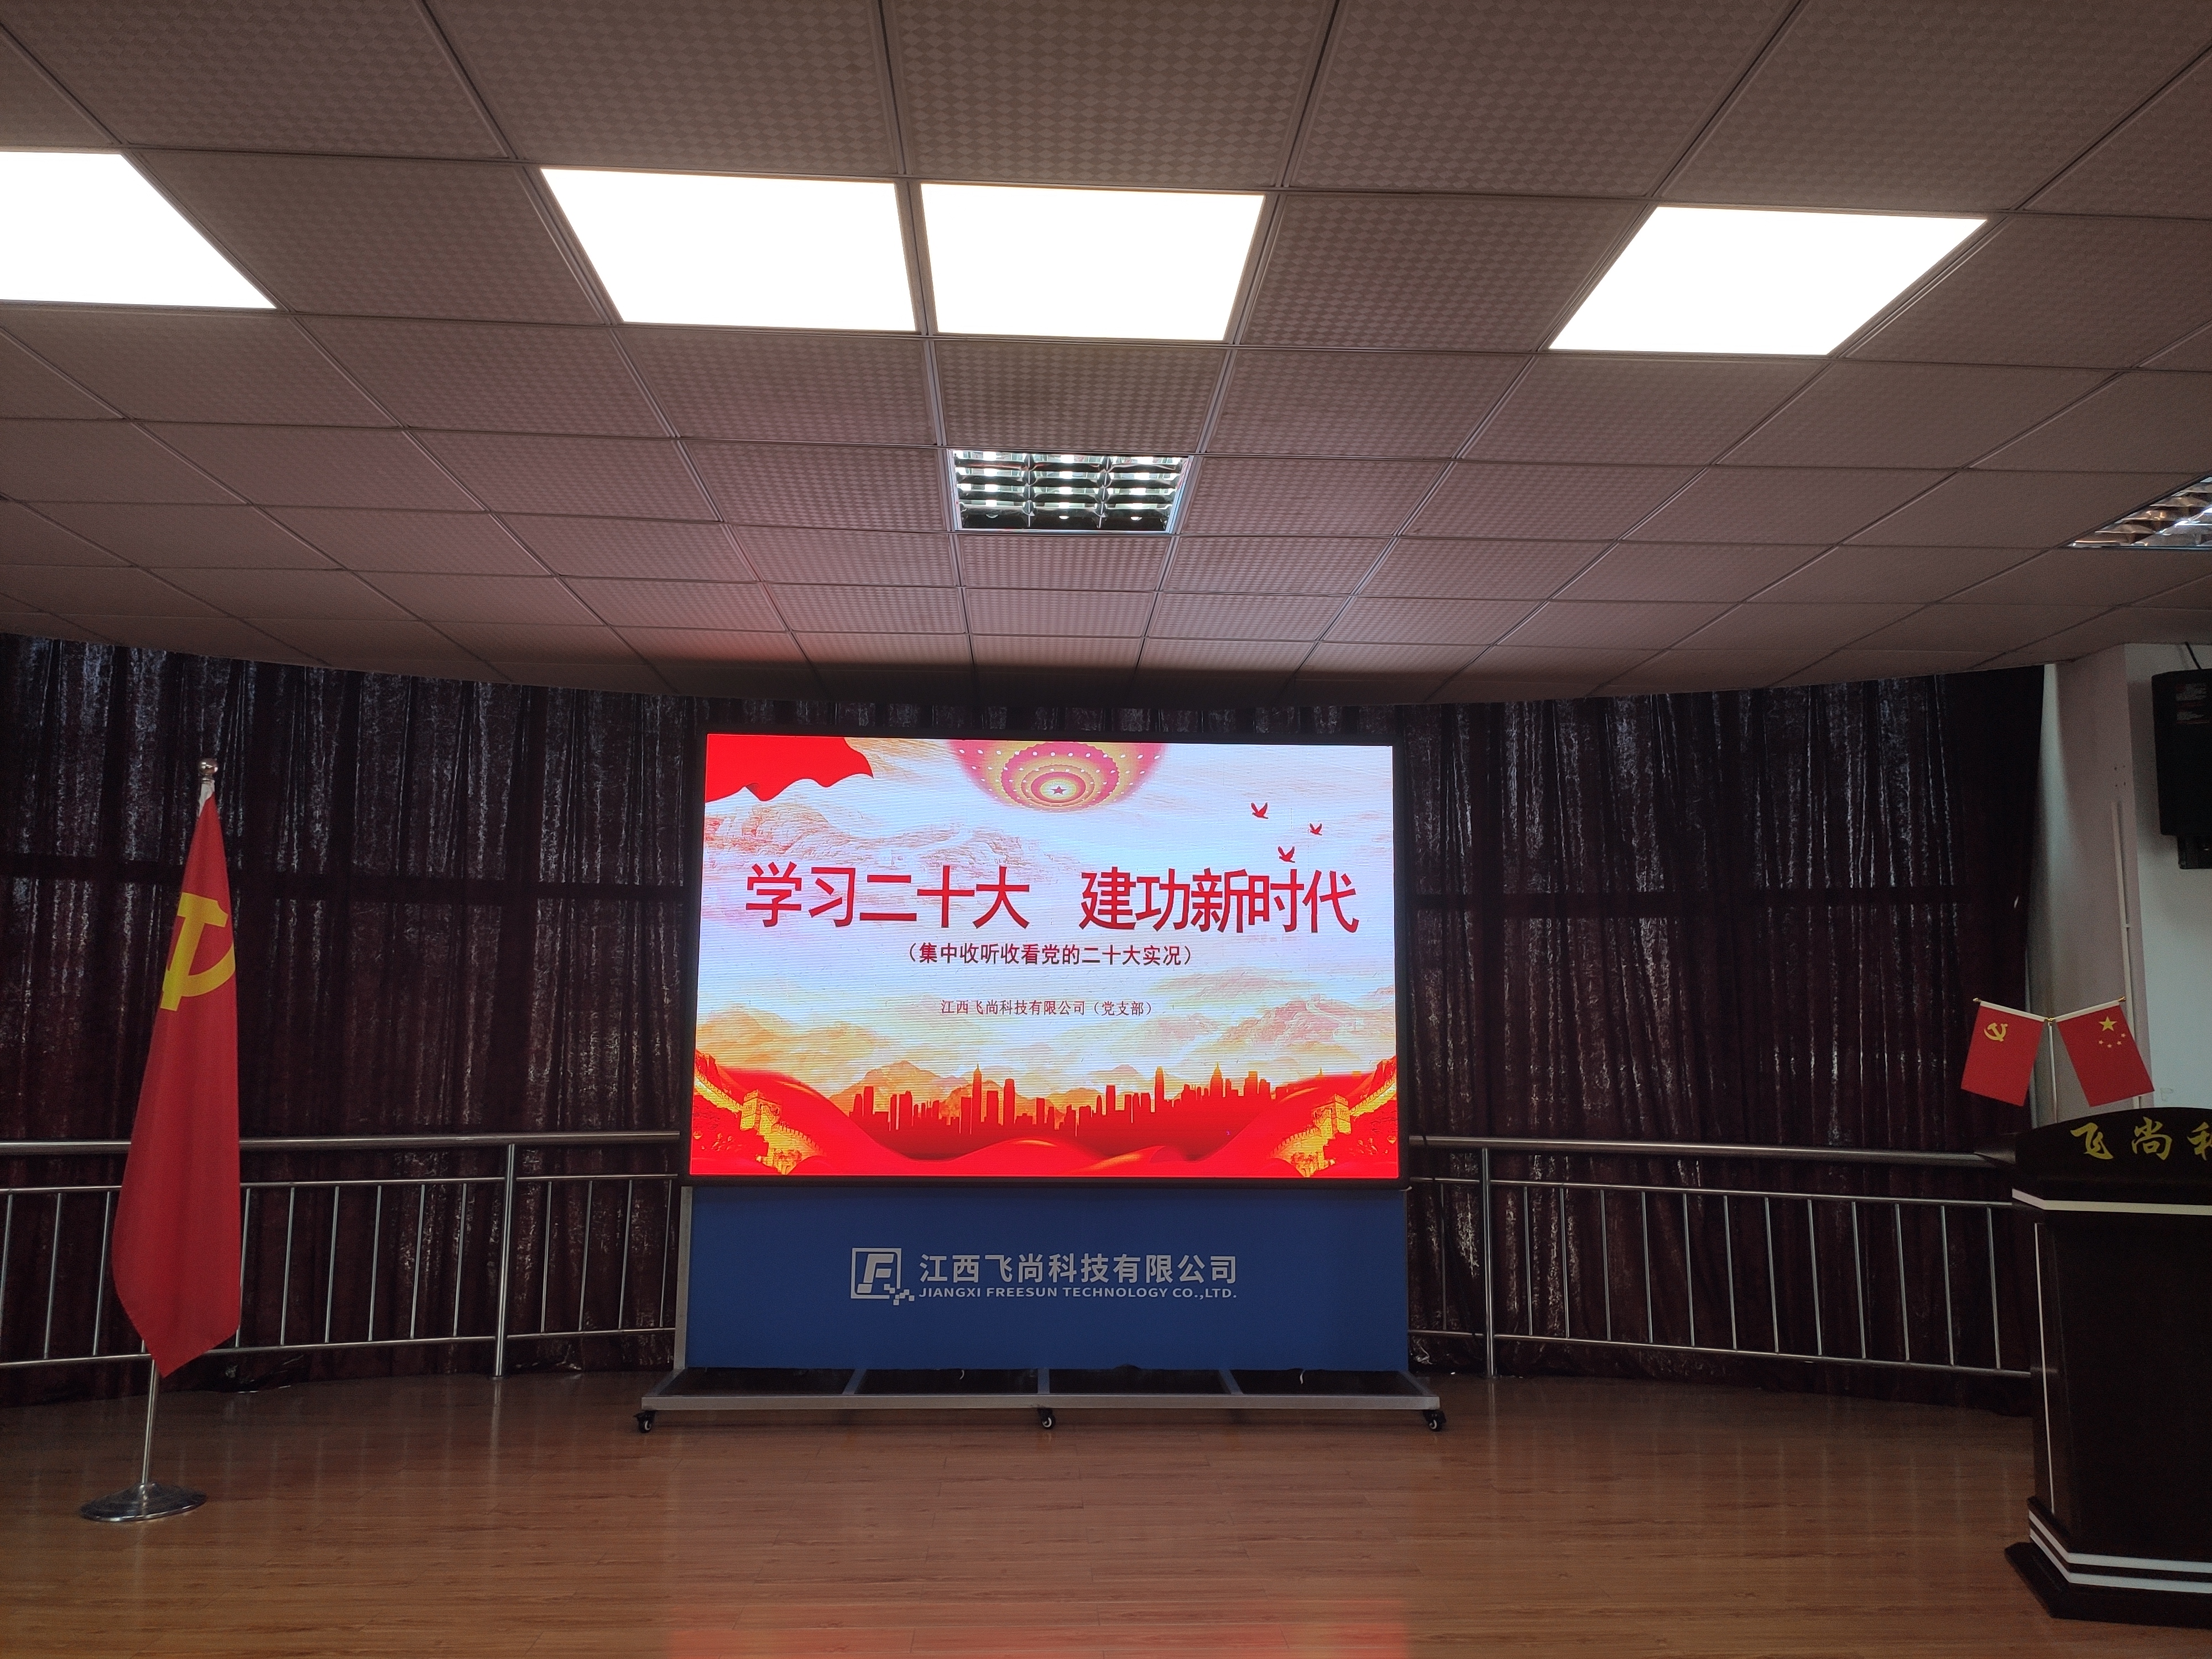 金沙js3777入口检测党支部组织全体党员收看中国共产党第二十次全国代表大会开幕